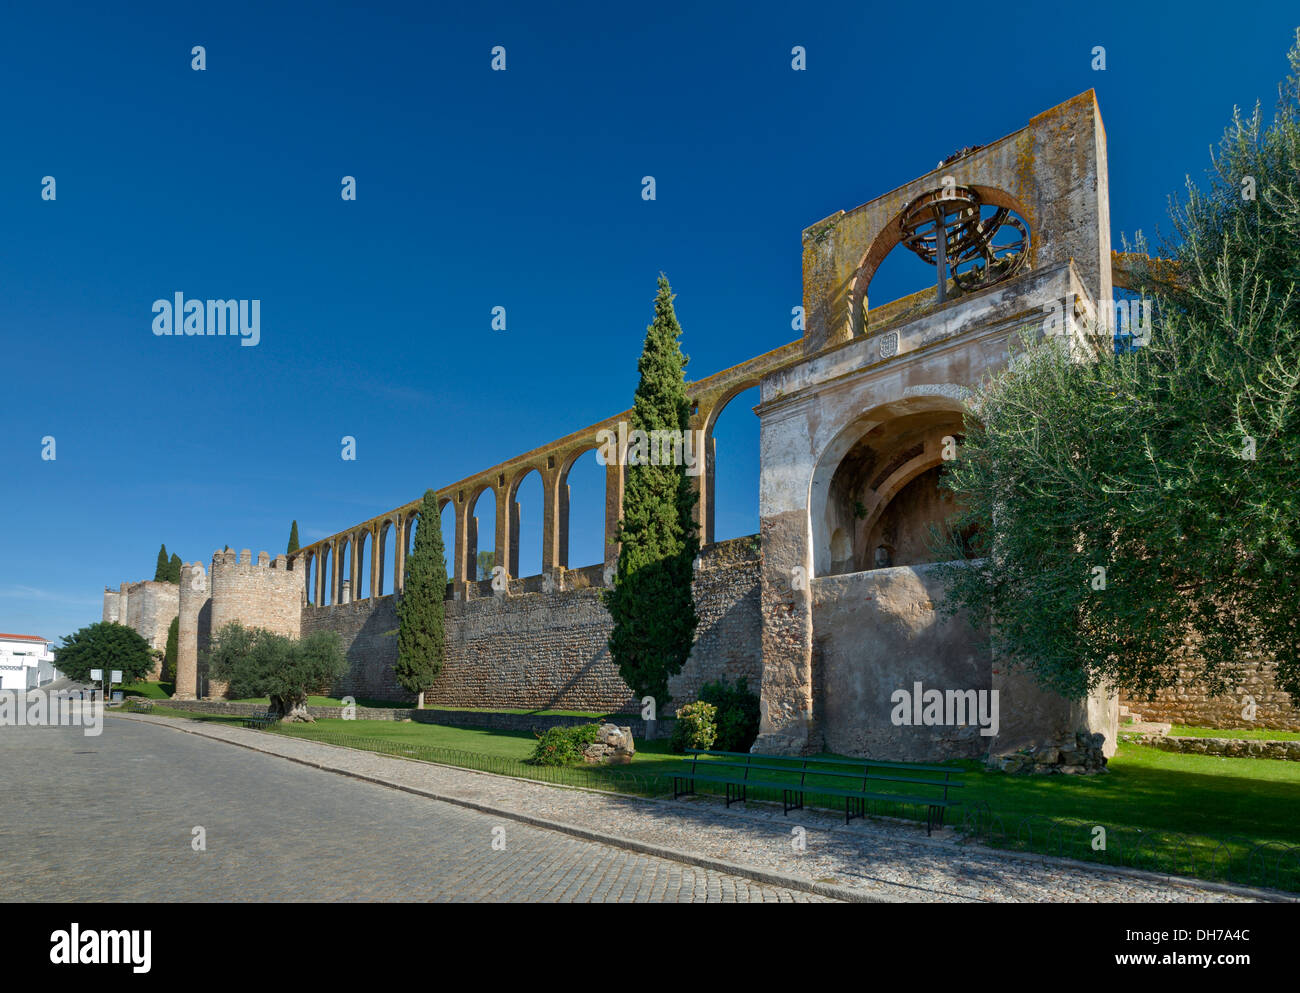 Aqueduc du 17ème siècle et de l'eau roues Serpa construit sur les murs de la ville, de l'Alentejo, Portugal Banque D'Images